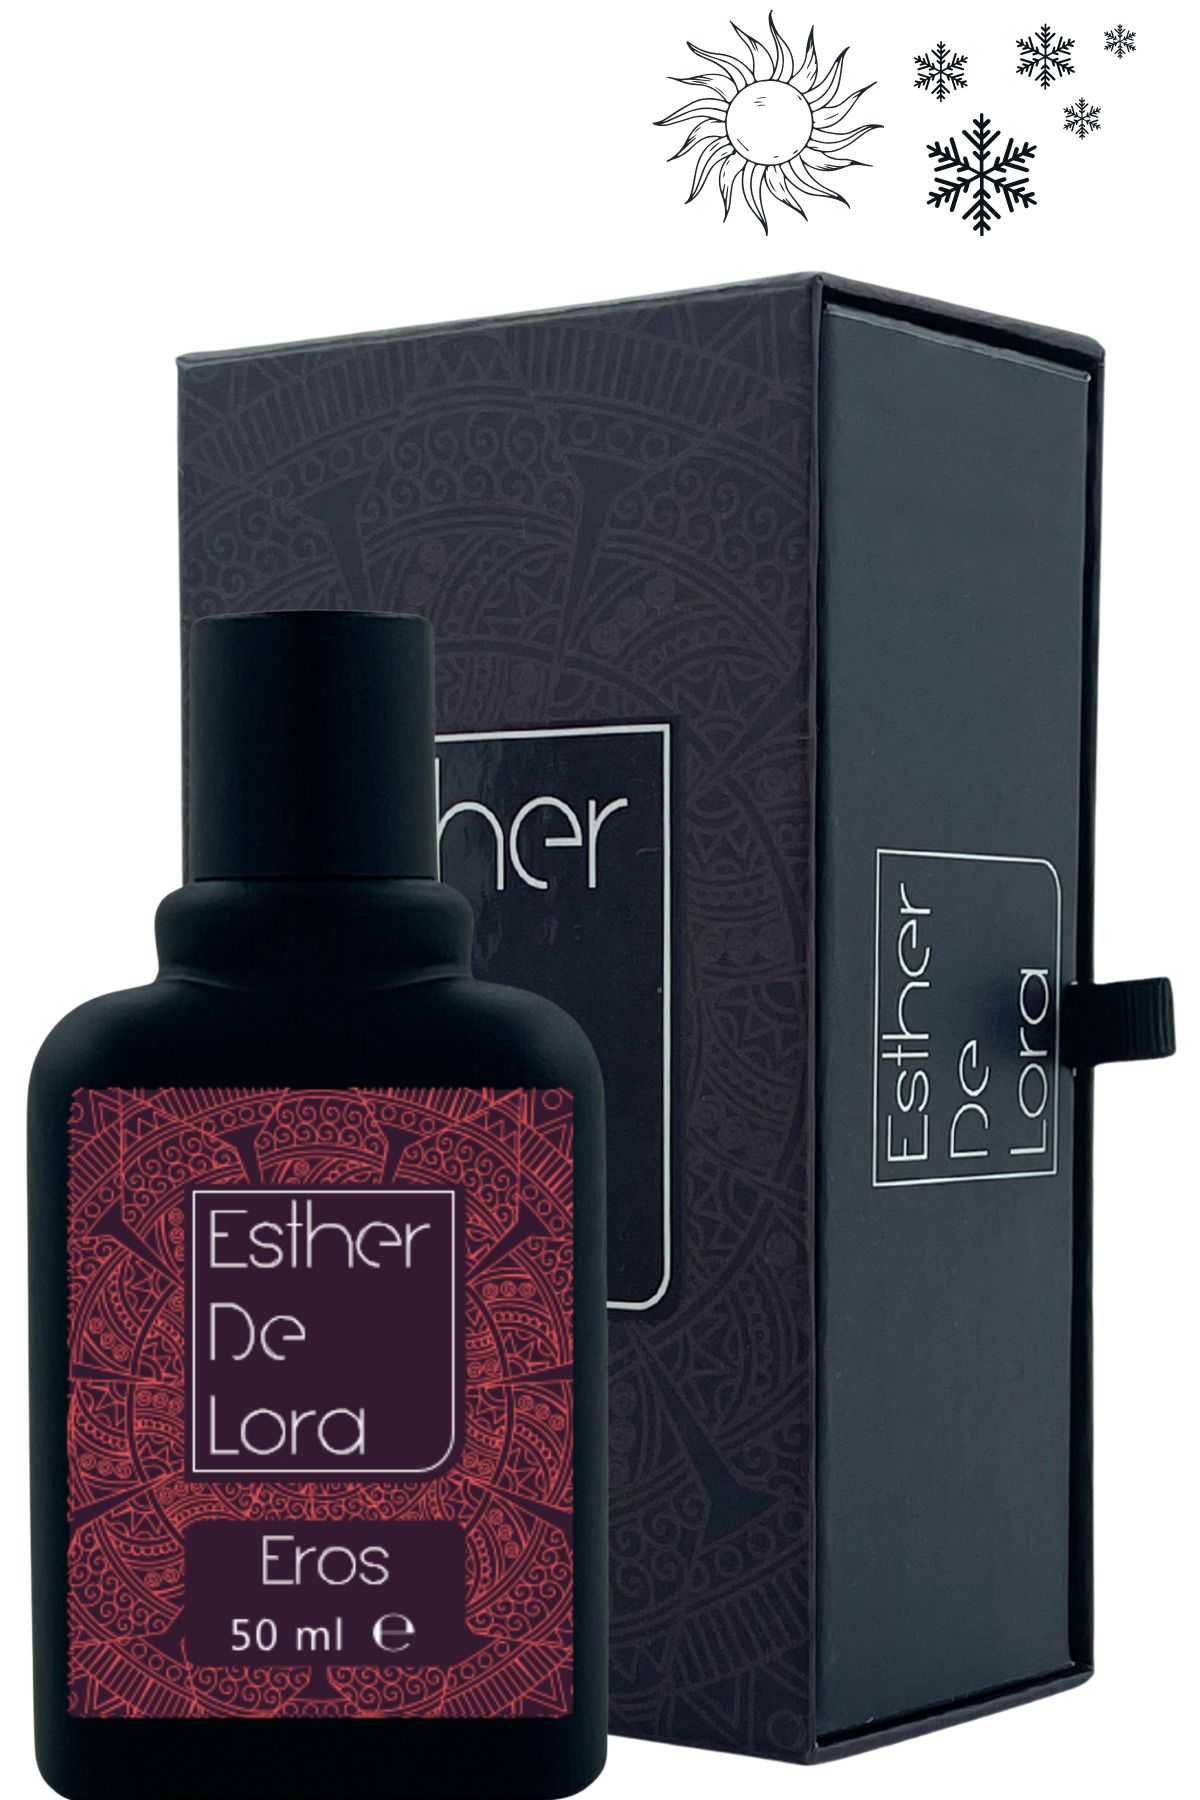 Esther De Lora Eros Flame %40 Esans Kalıcı Erkek Parfum Versace Edp Hediye Yılbaşı Premium Kutu Afrodizyak 50ml